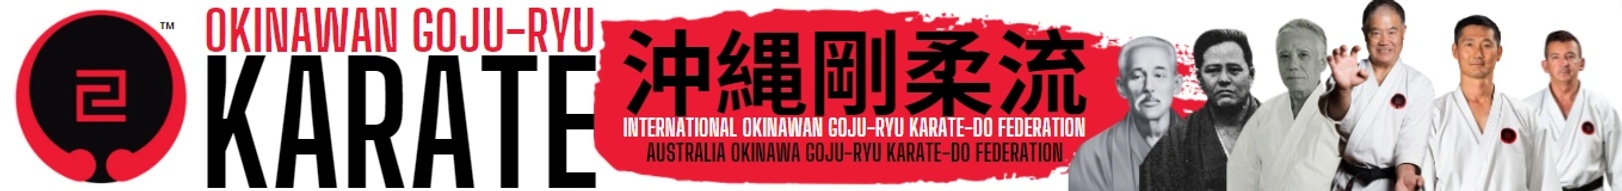 IOGKF - Australian Okinawan Goju-ryu Karate-do Federation